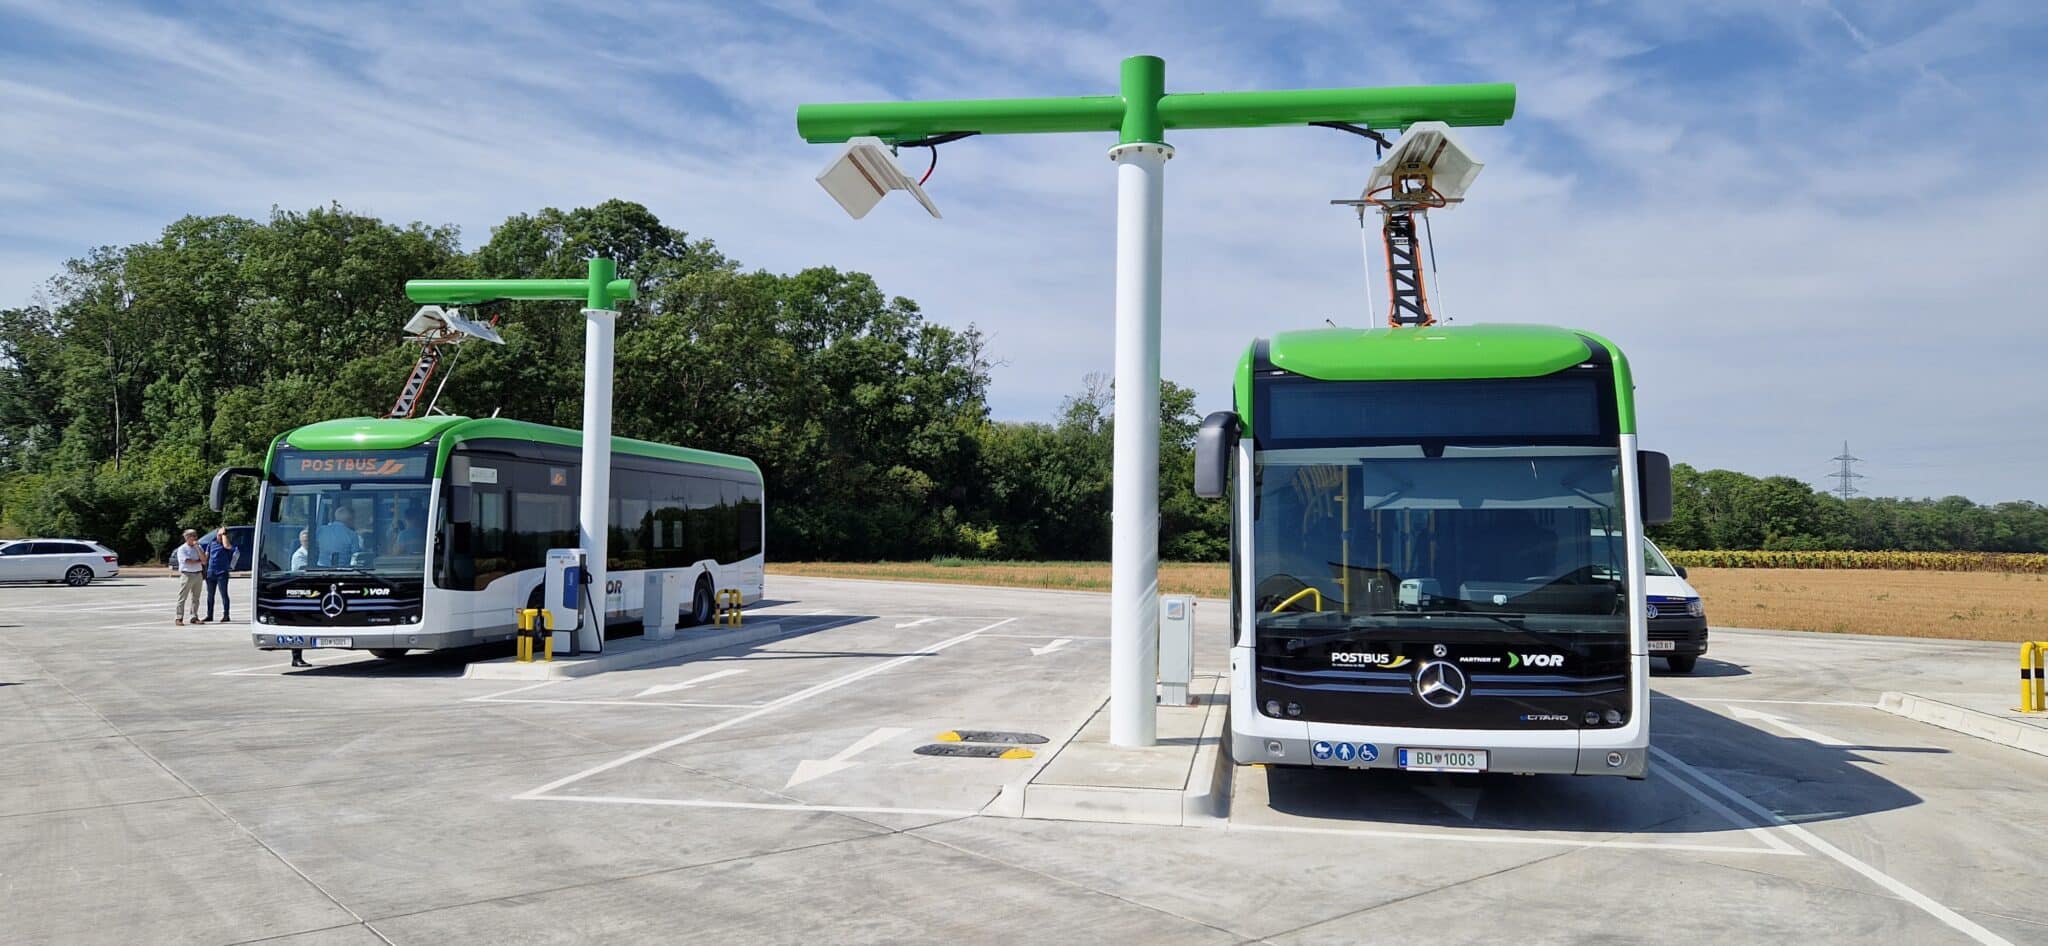 e-Bus - System im südlichen Weinviertel für den Regionalverkehr | 20220818 111558 min scaled